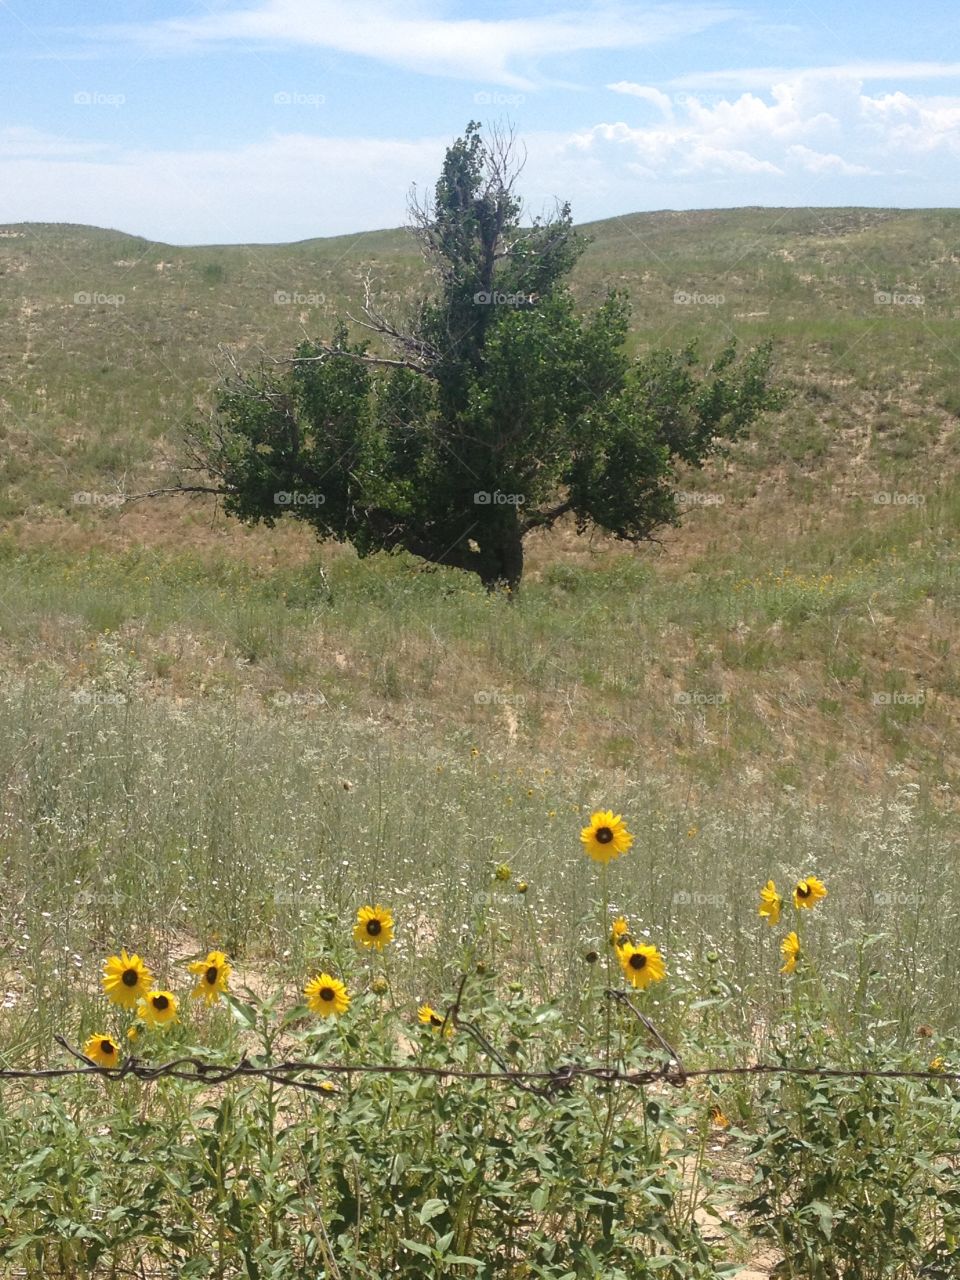 Lone tree in a field 